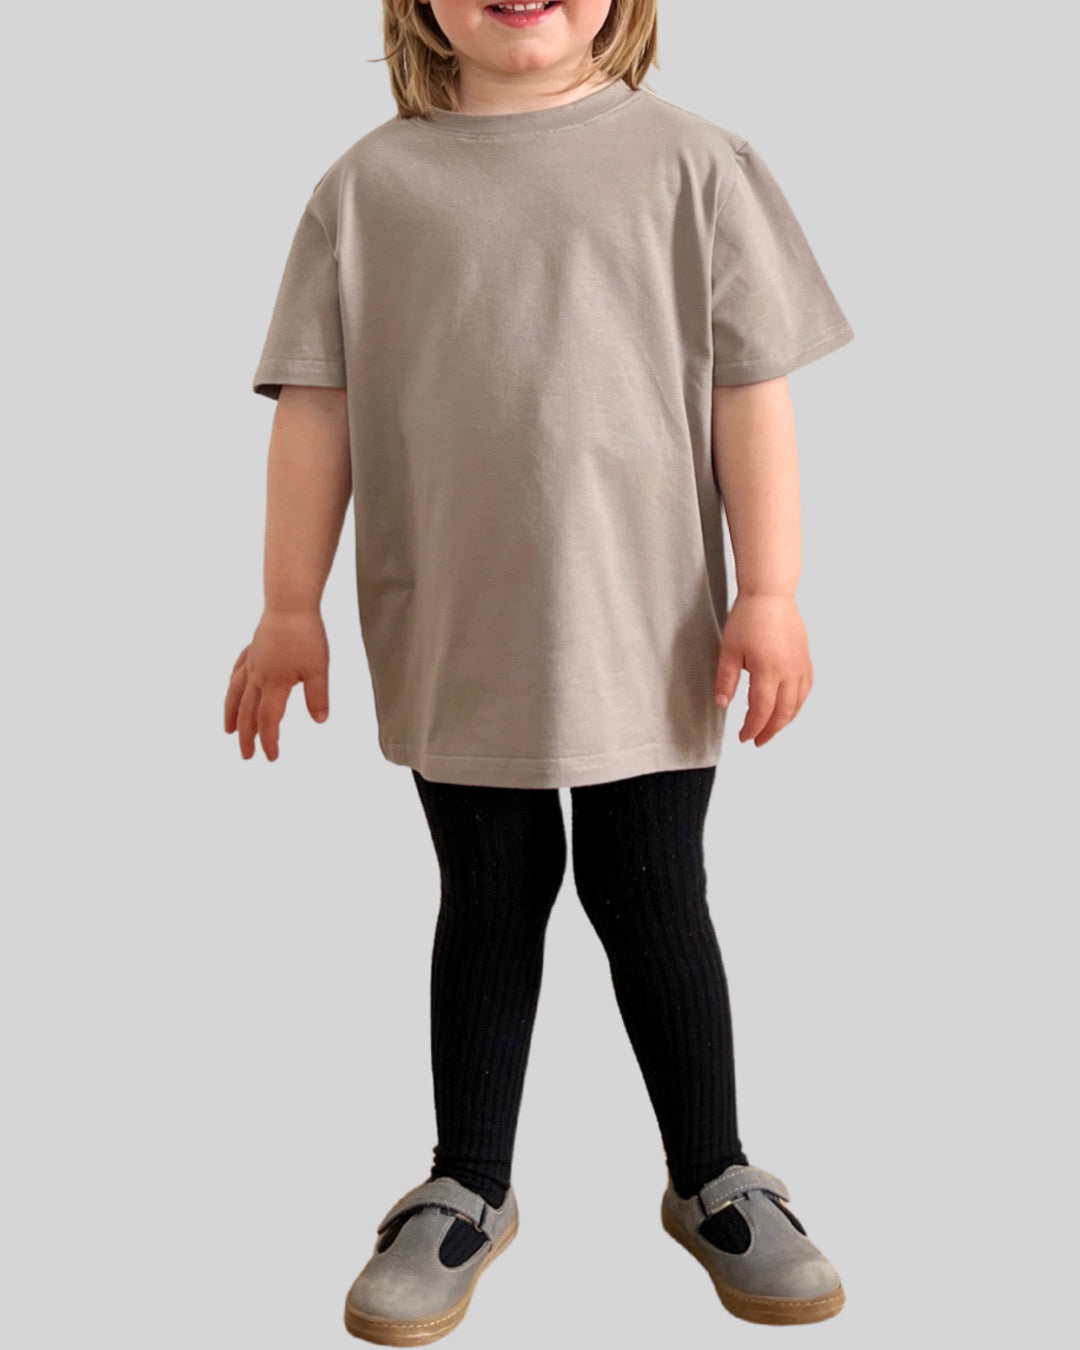 Unisex Kinder T-Shirt,Grau, Mädchen und Jungen Handmade Basic T-Shirt- Größe 98-164, | Yemssyro